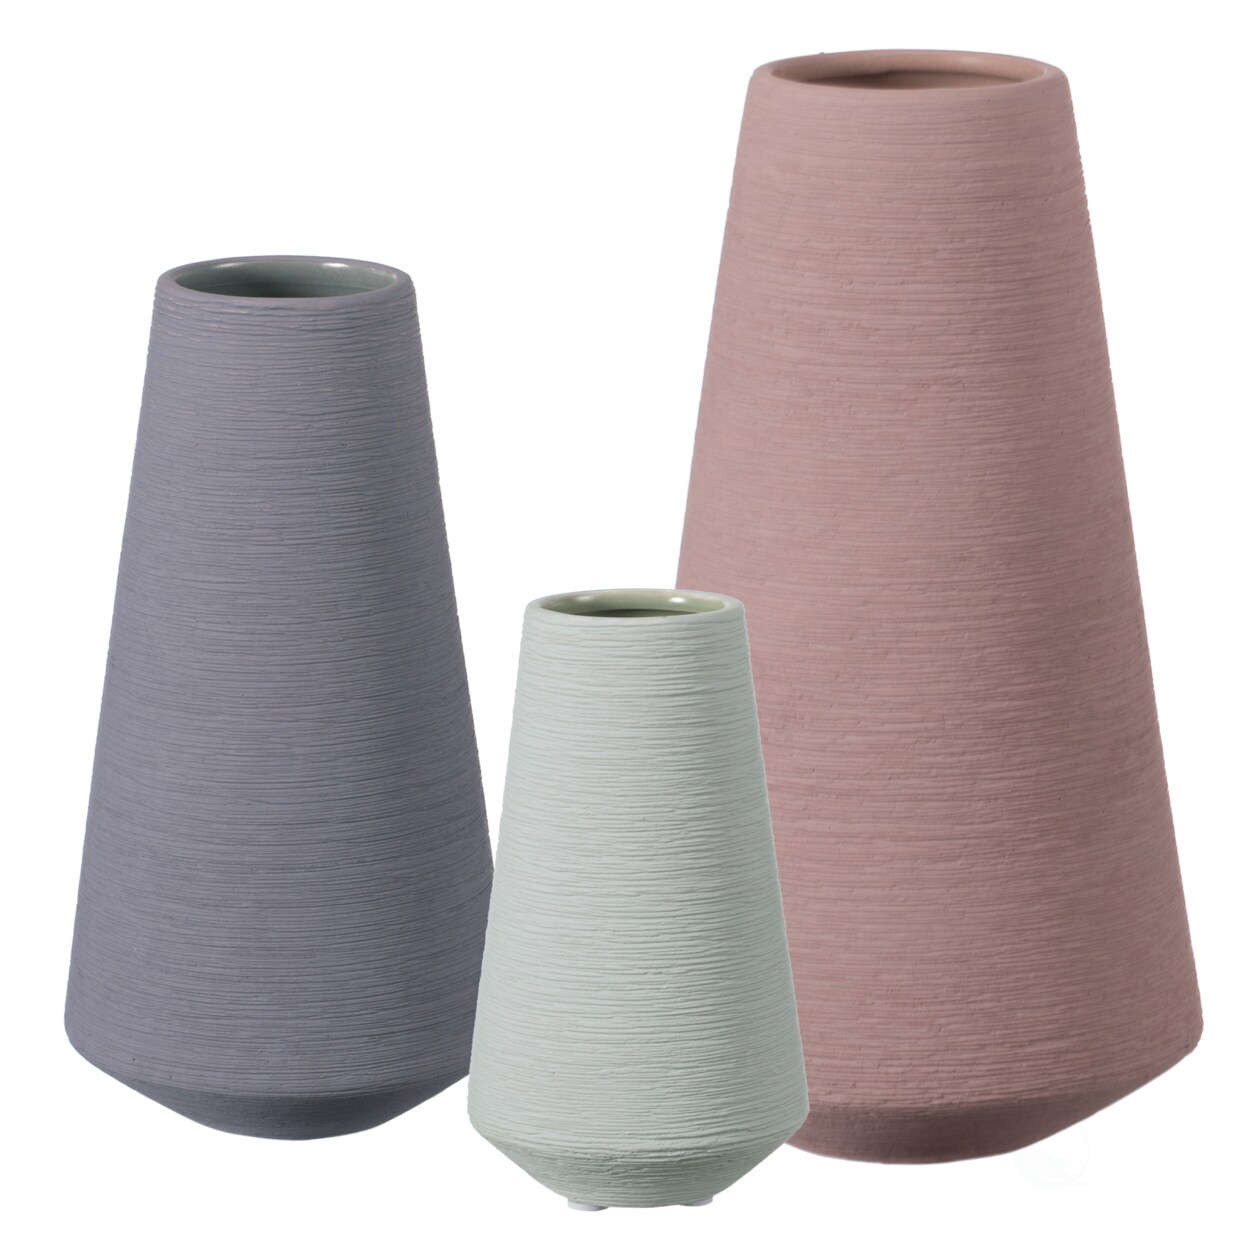 Uniquewise Decorative Ceramic Round Cone Shape Centerpiece Table Vase